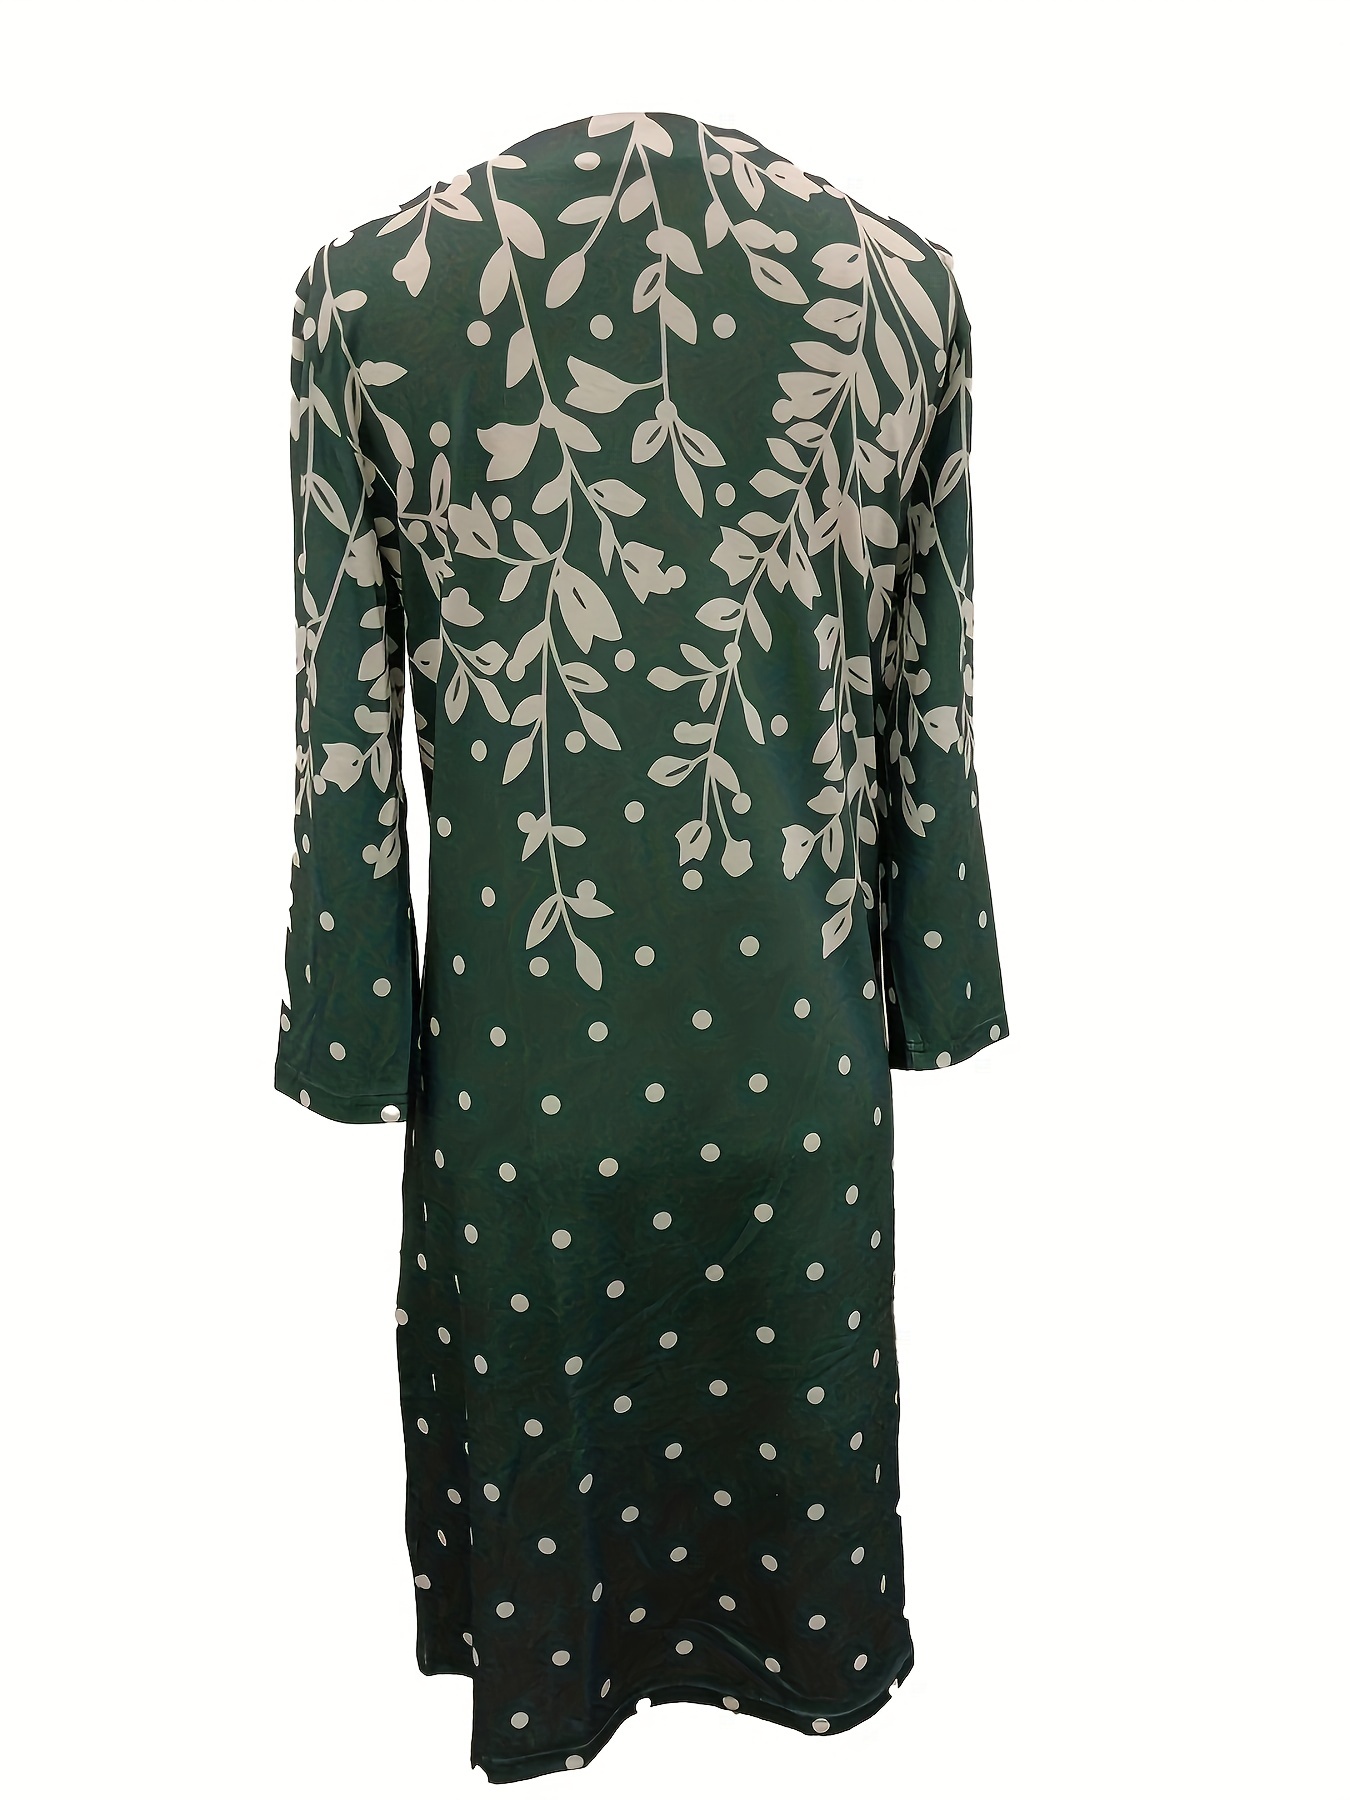 Φόρεμα Με Floral Print Απλό, Casual Φόρεμα Με Λαιμόκοψη Με Μακρυμάνικο, Γυναικεία Ρούχα